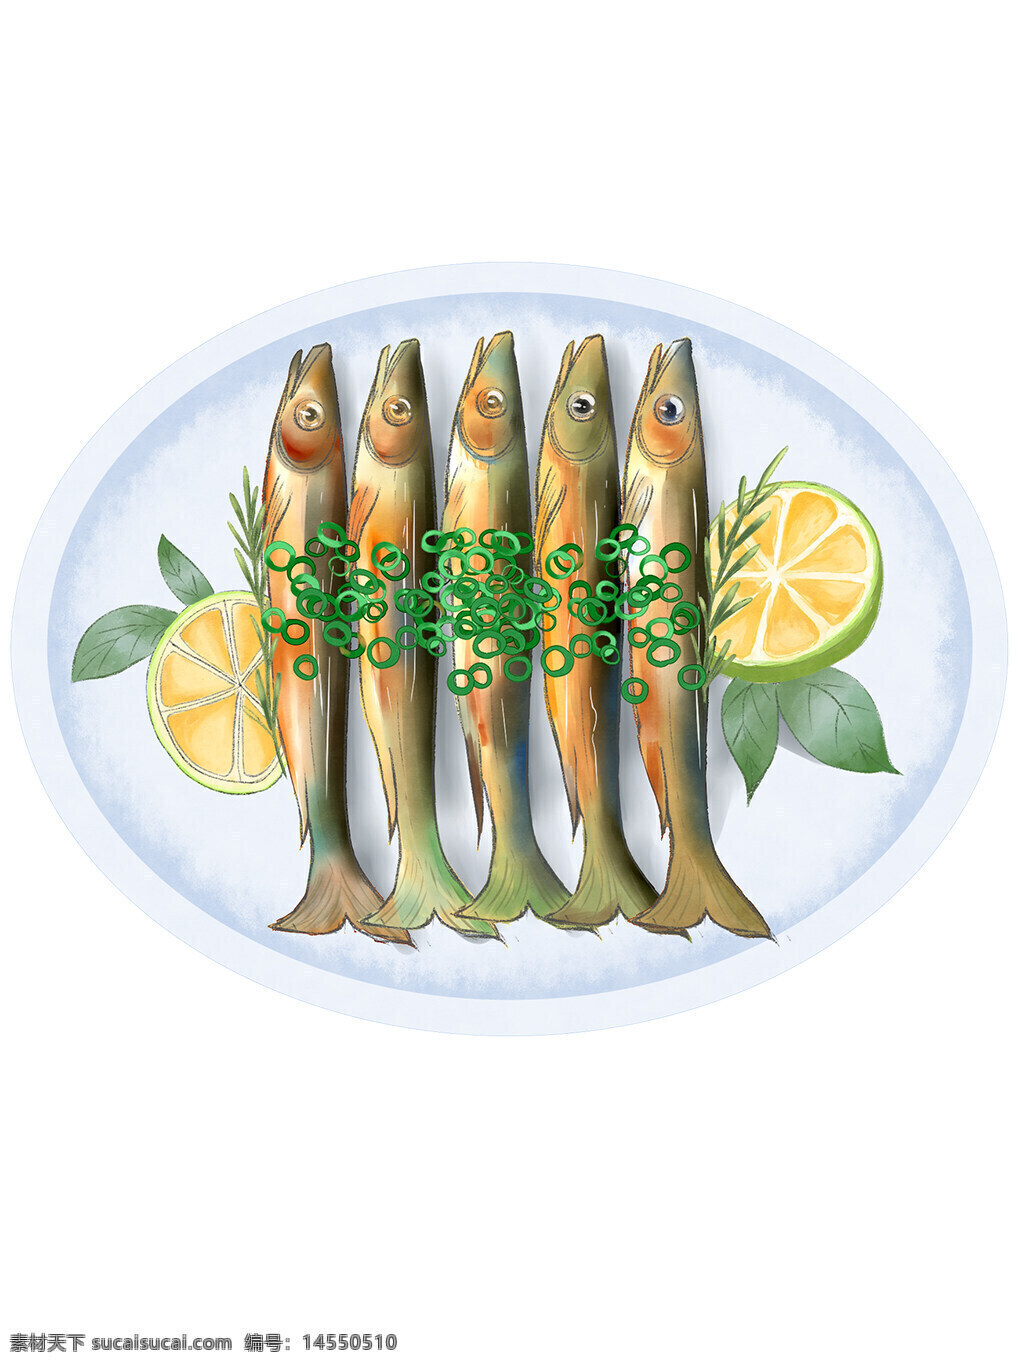 烤鱼 美食 烧烤 鱼 吃鱼 手绘 烤制品 手绘美食 葱花 柠檬 迷迭香